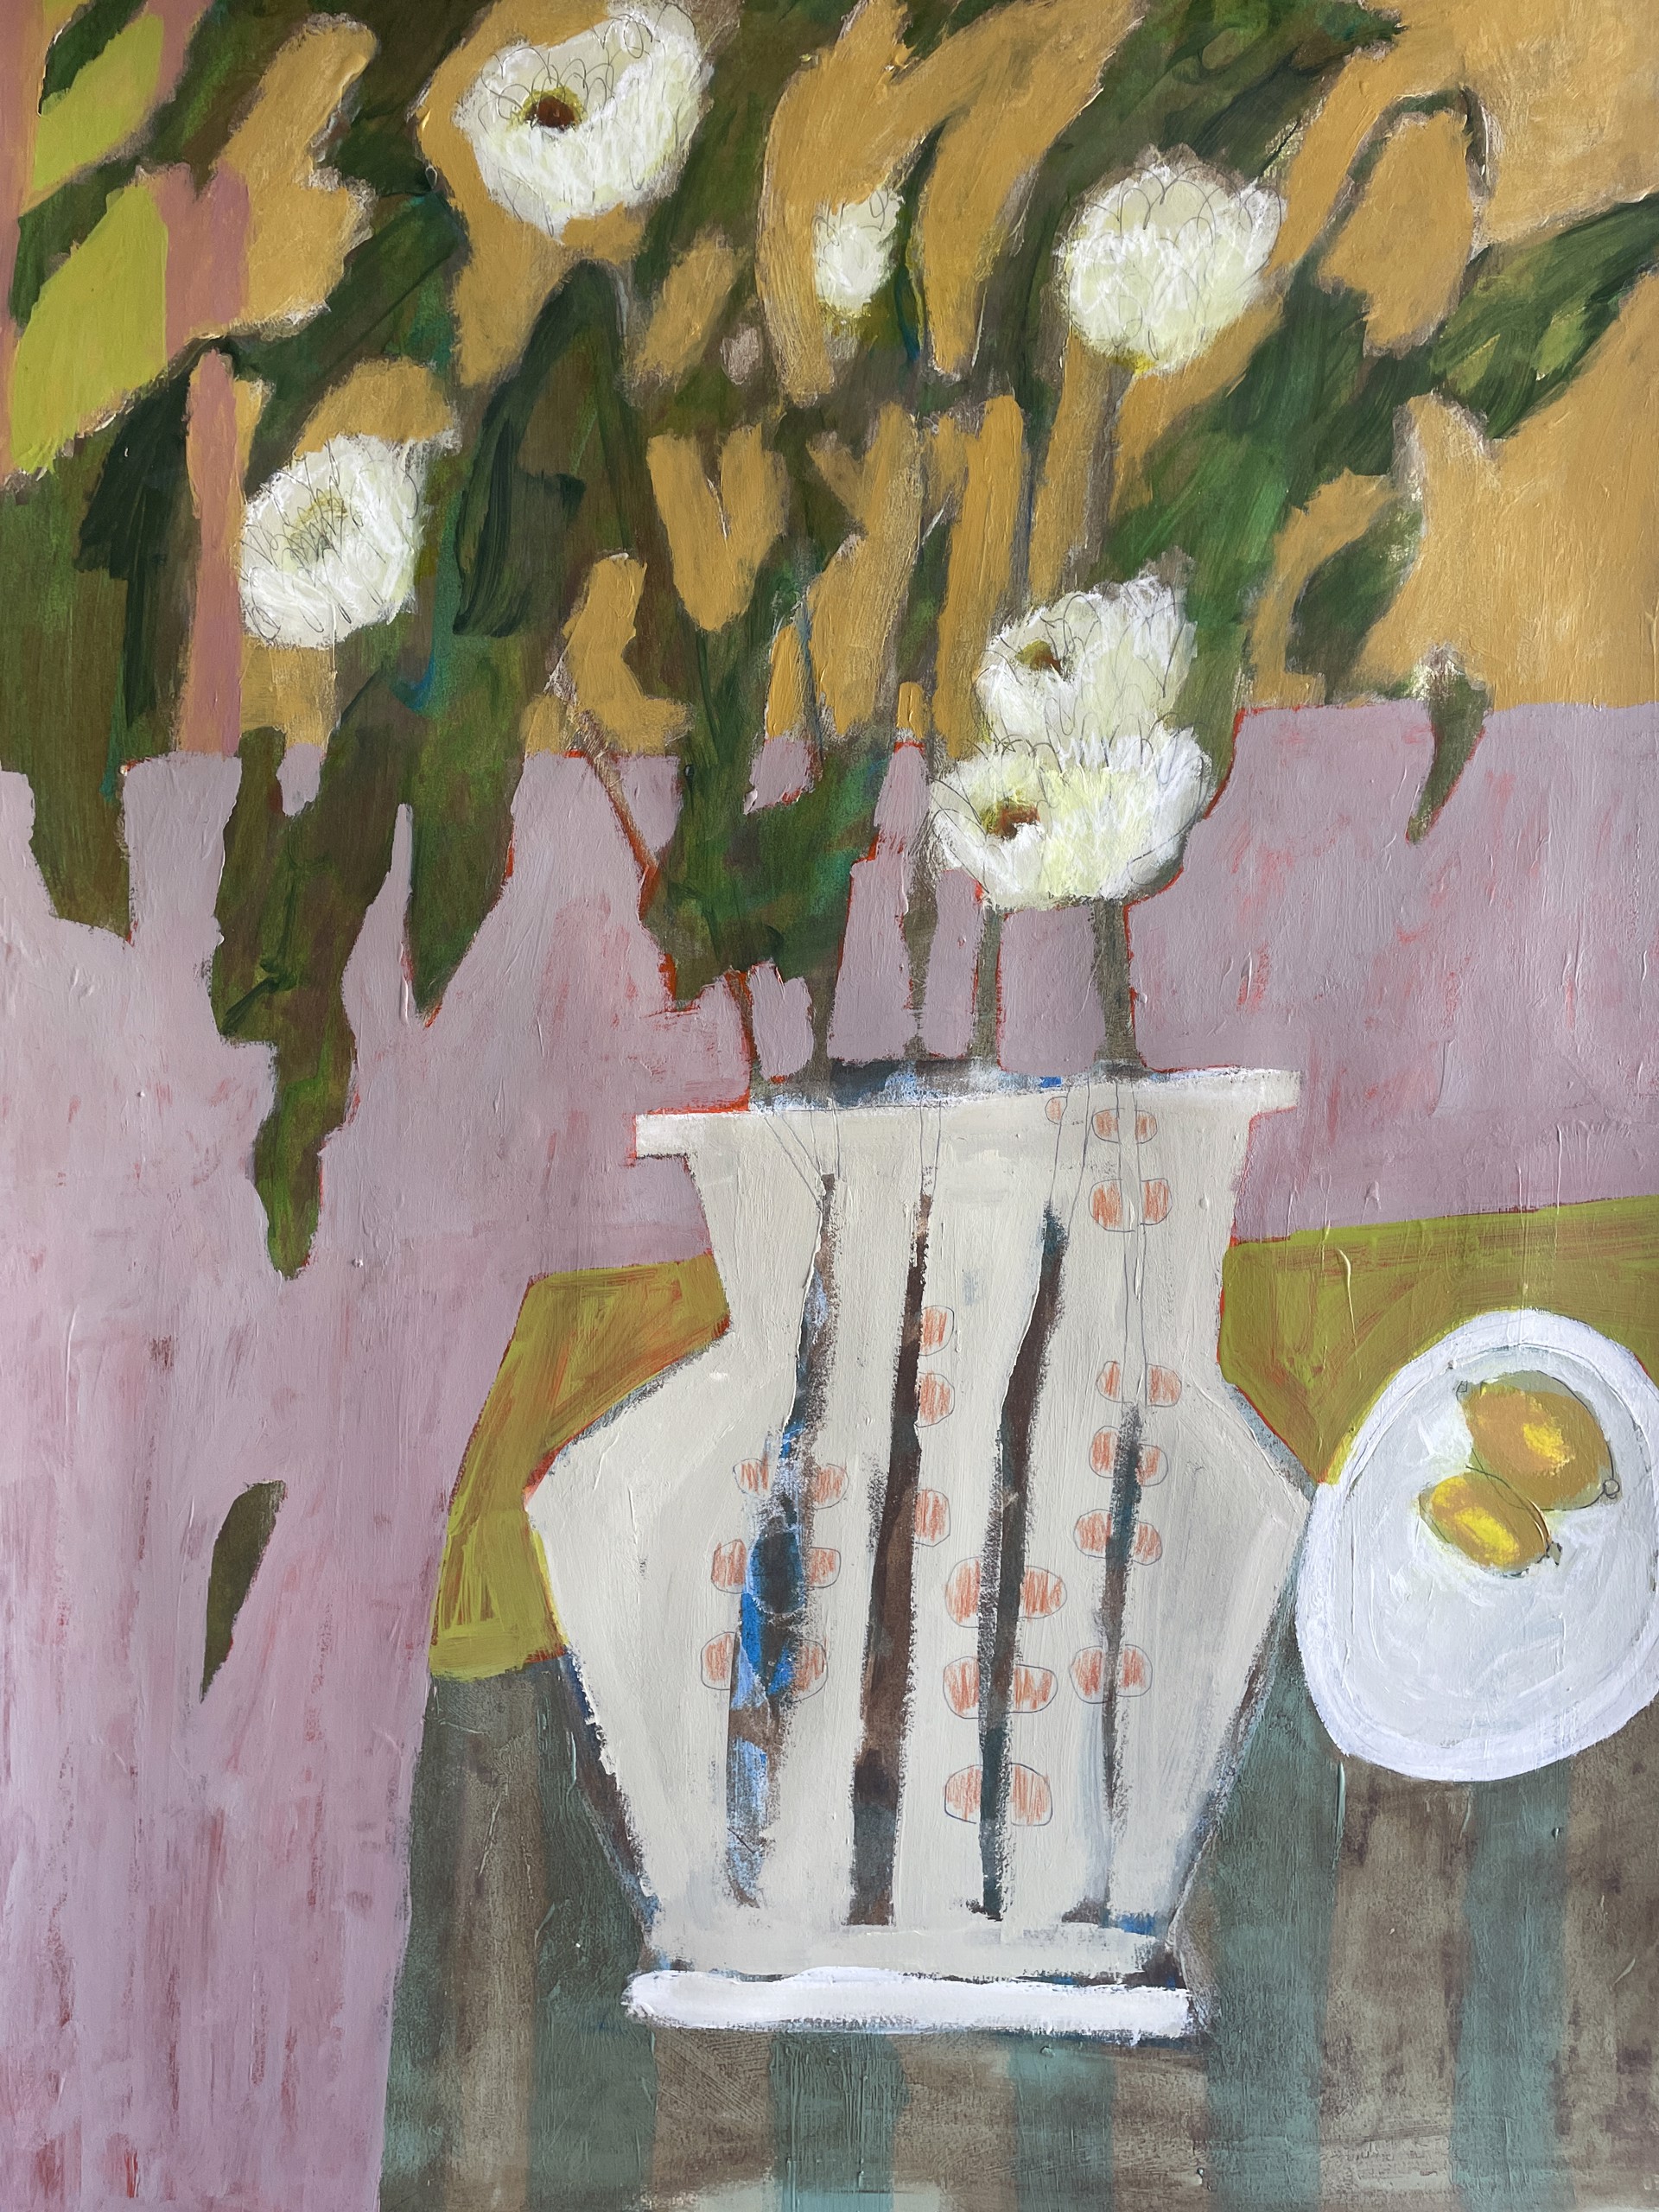 White Flowers and Lemons on Table by Rachael Van Dyke